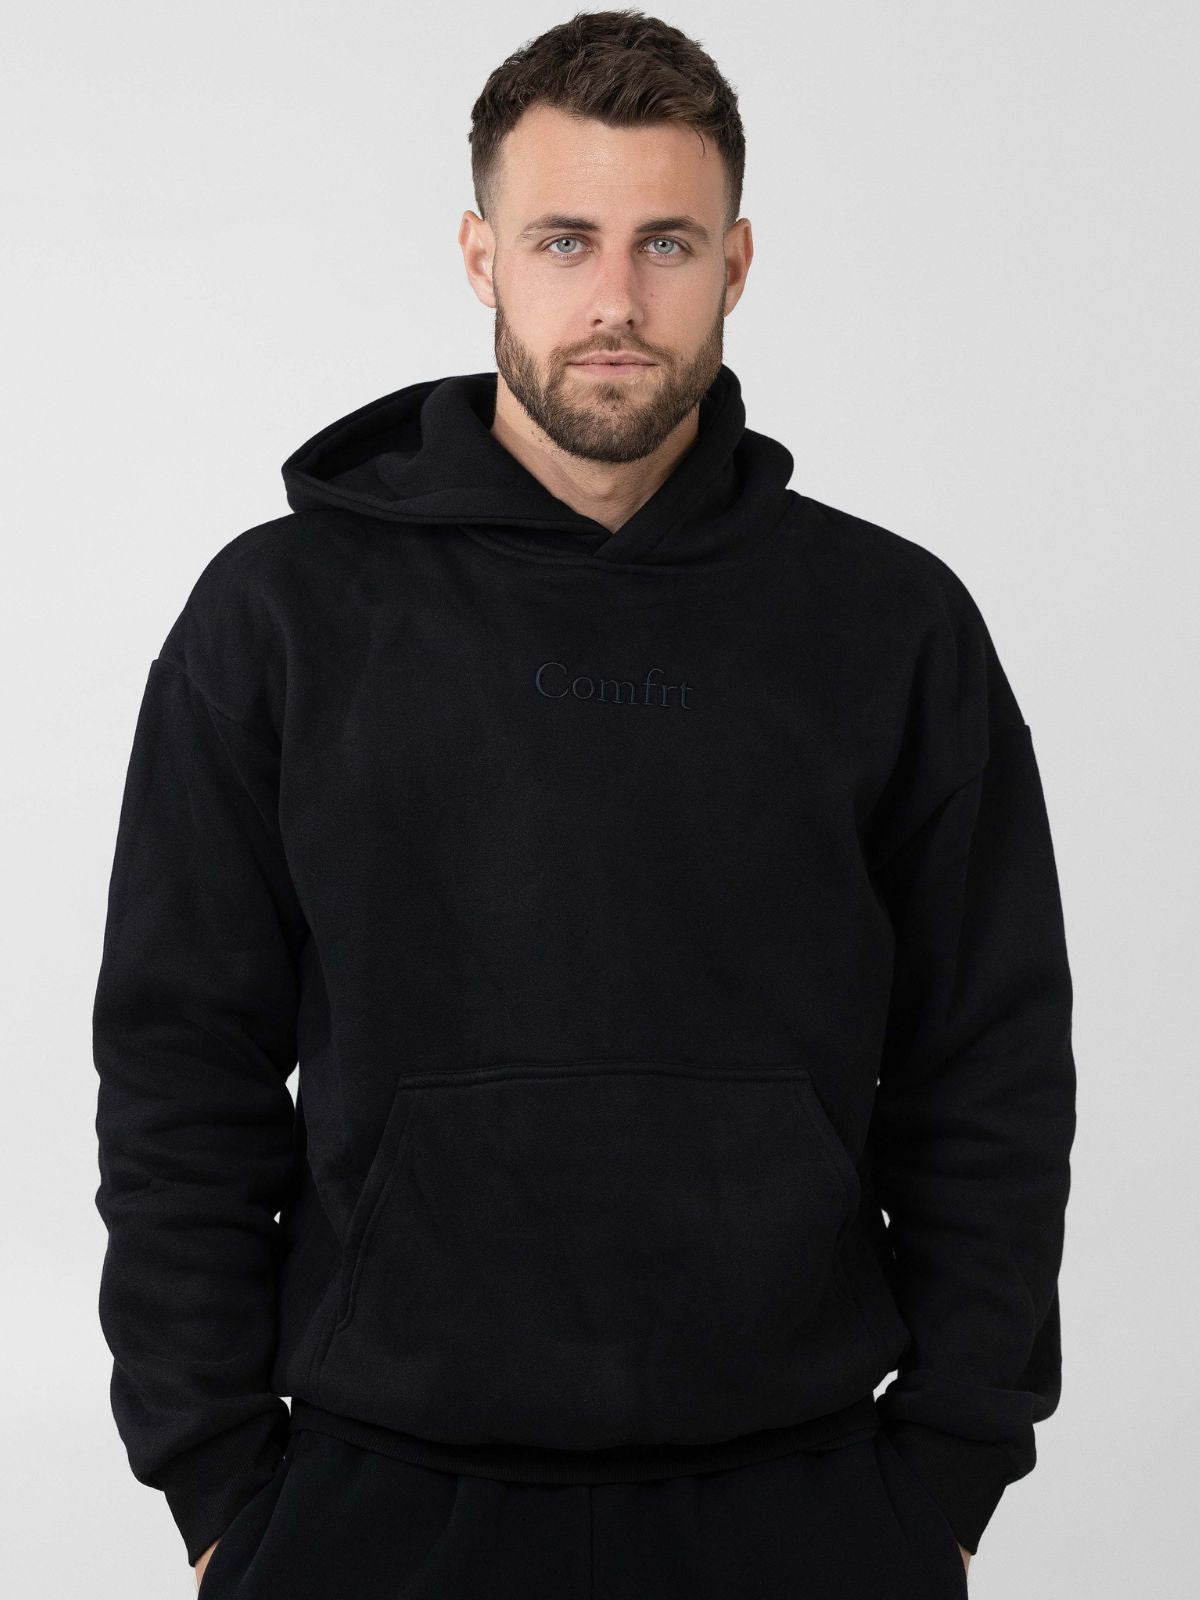 Comfrt oversized hoodie in Bark